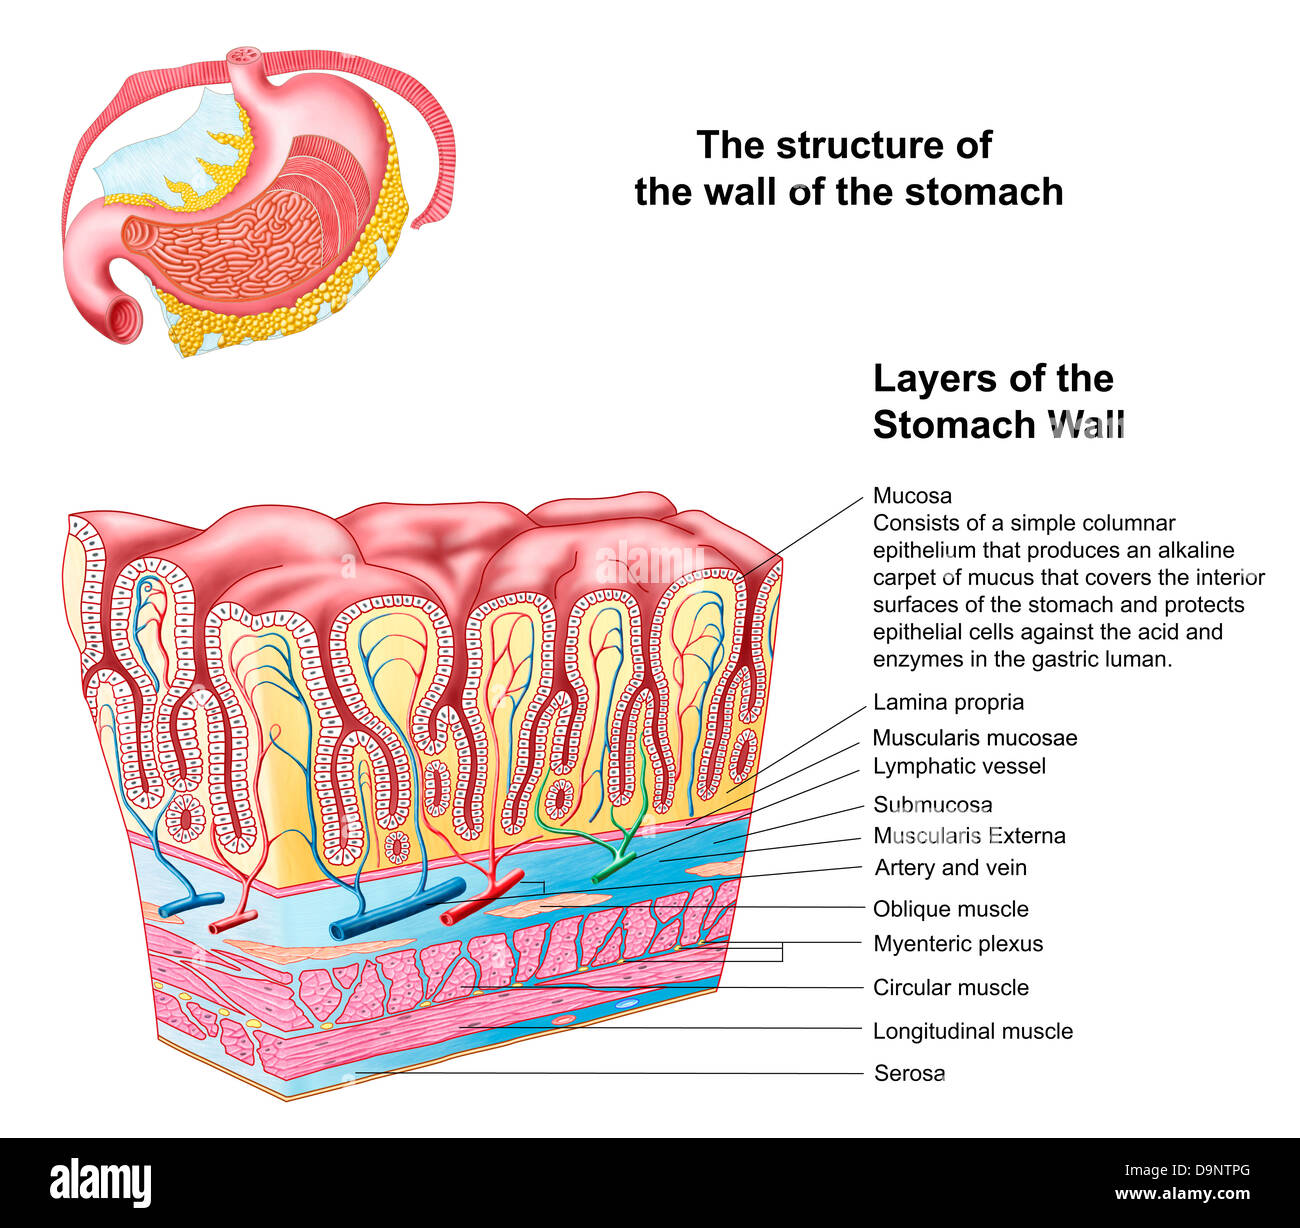 Anatomie Der Struktur Und Der Schichten Der Magenwand